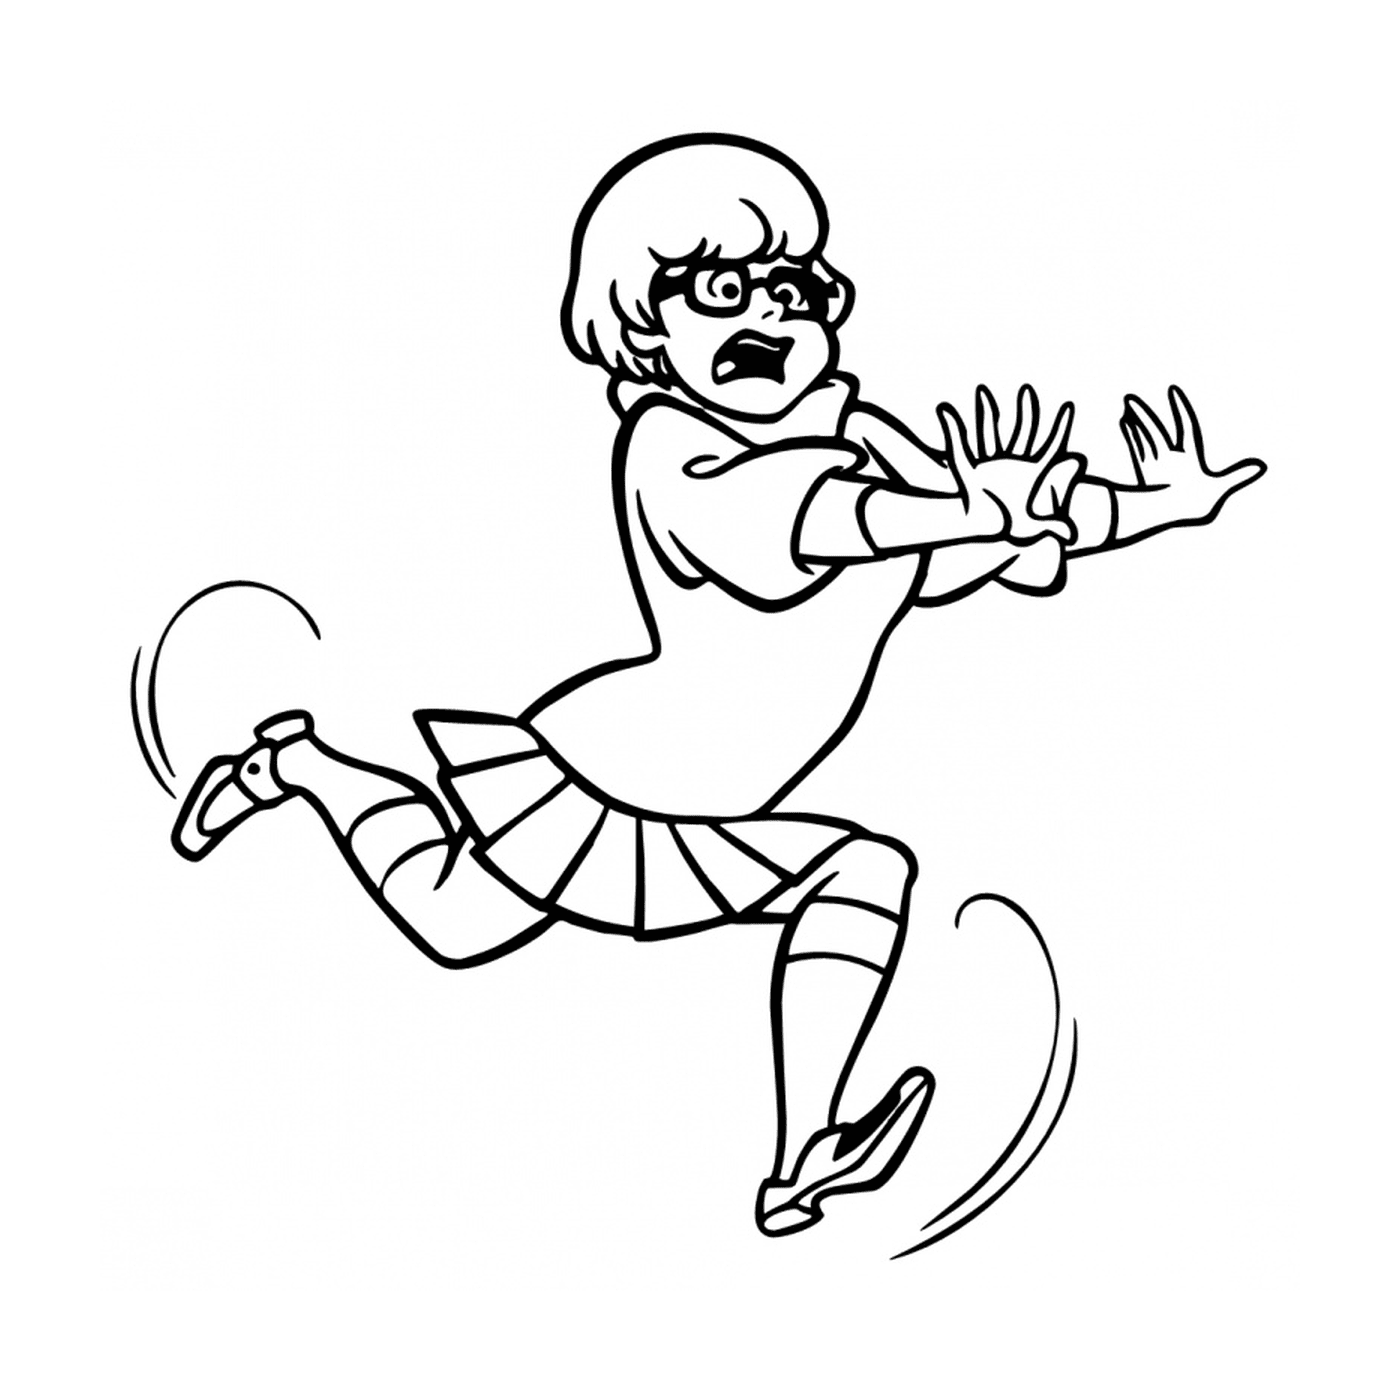  Una ragazza disegnata che corre nell'aria 